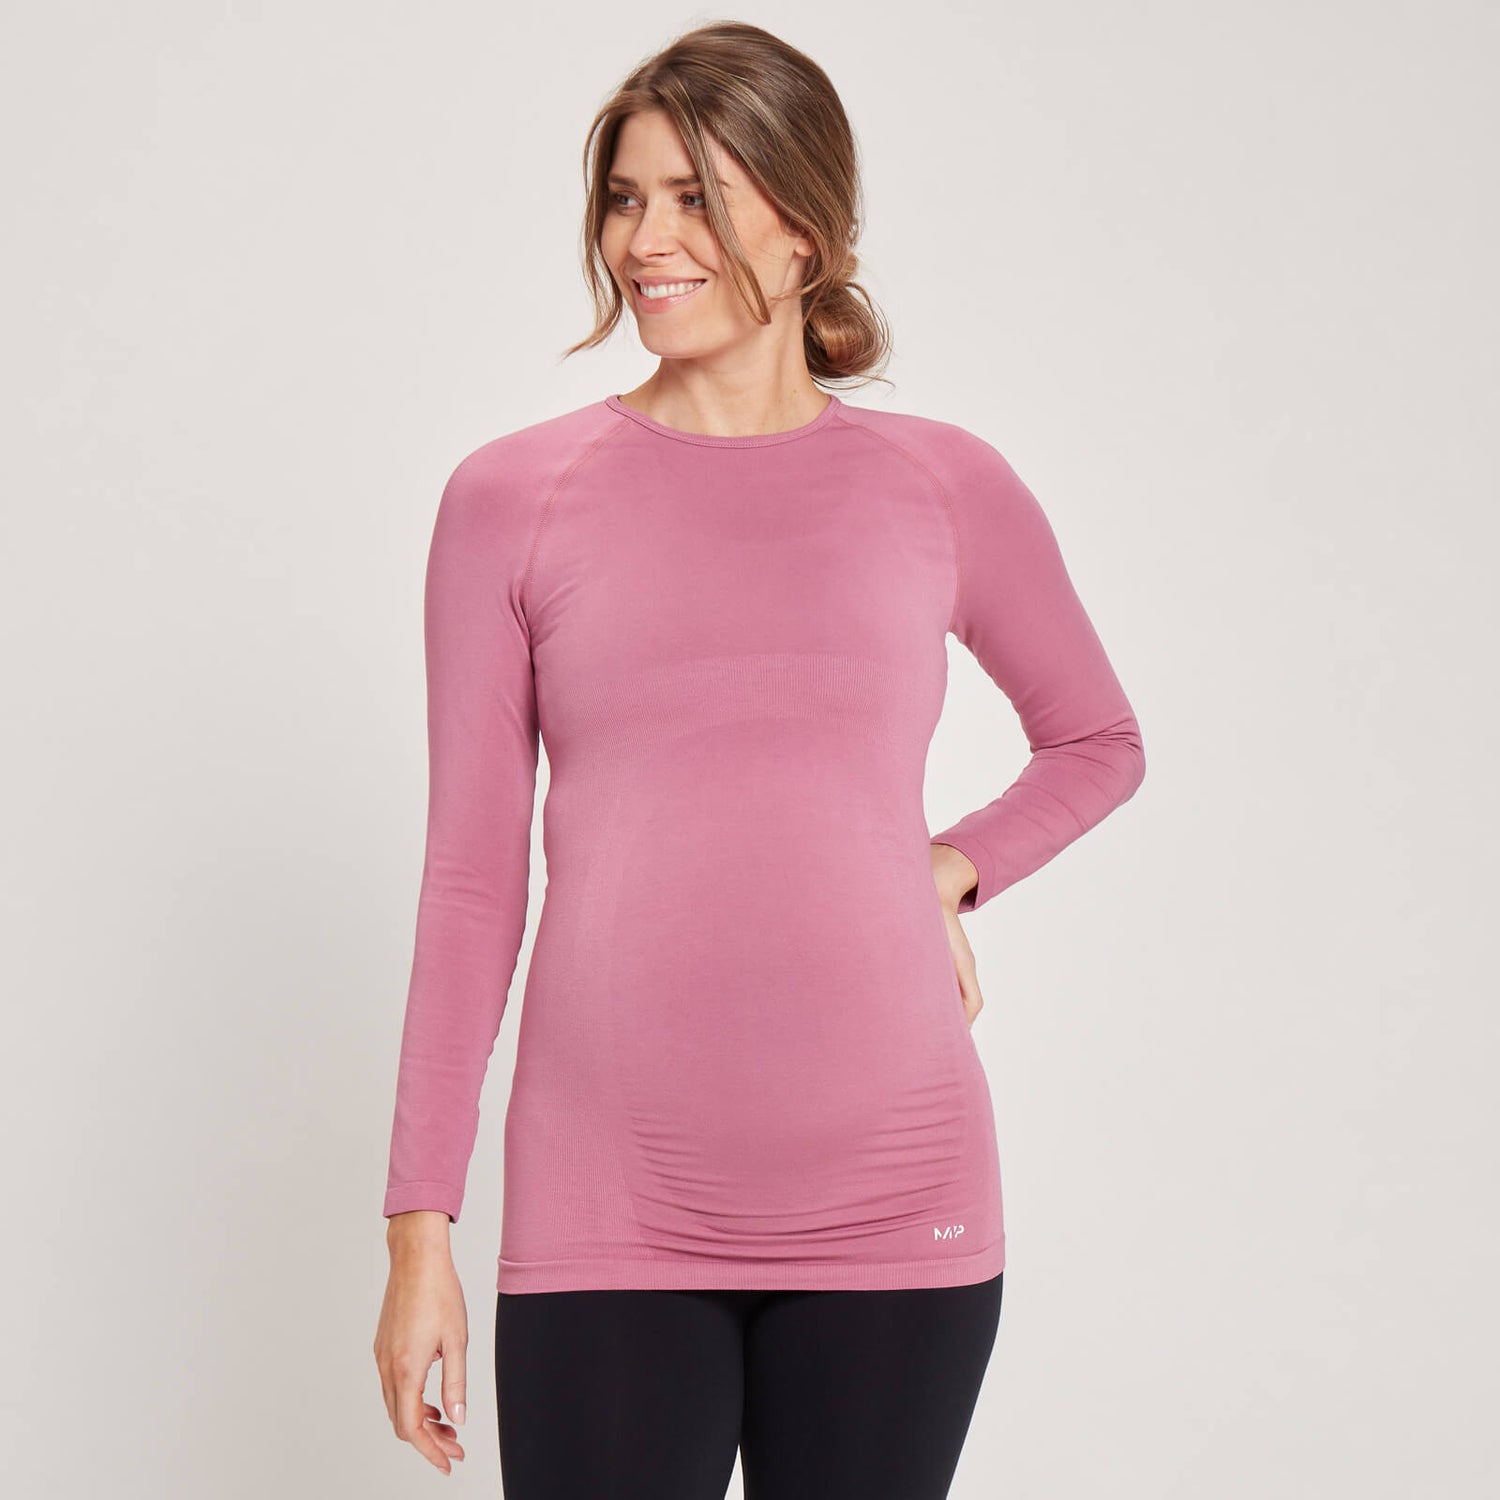 Dámske bezšvové tehotenské tričko MP s dlhými rukávmi – fialové - XS